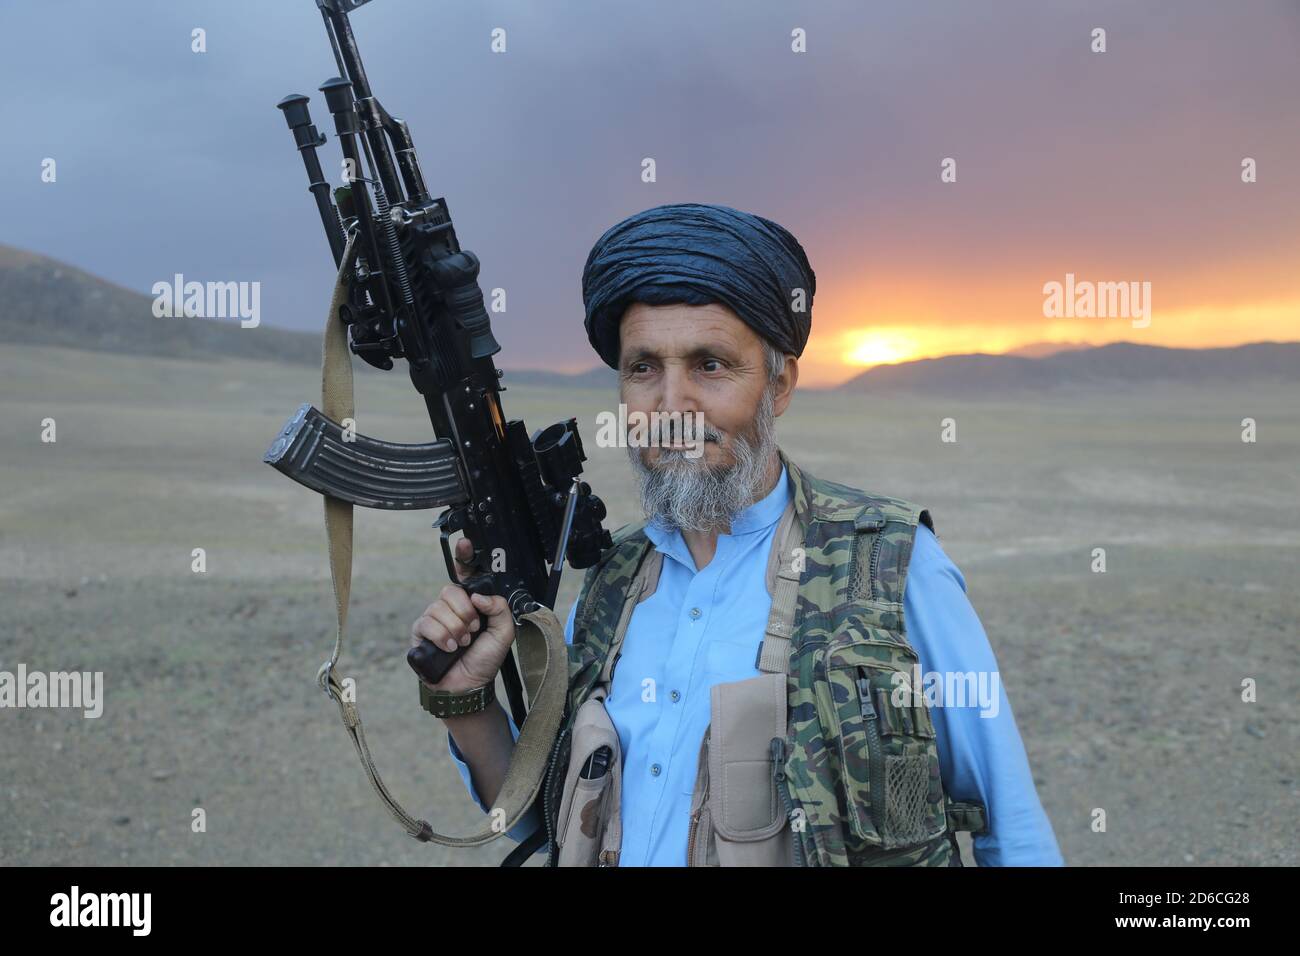 L'image est tirée des talibans montrant le combattant taliban qu'il porte une arme. 13 mai 2020, Mohammad Agha, province de Logar, Afghanistan. Banque D'Images